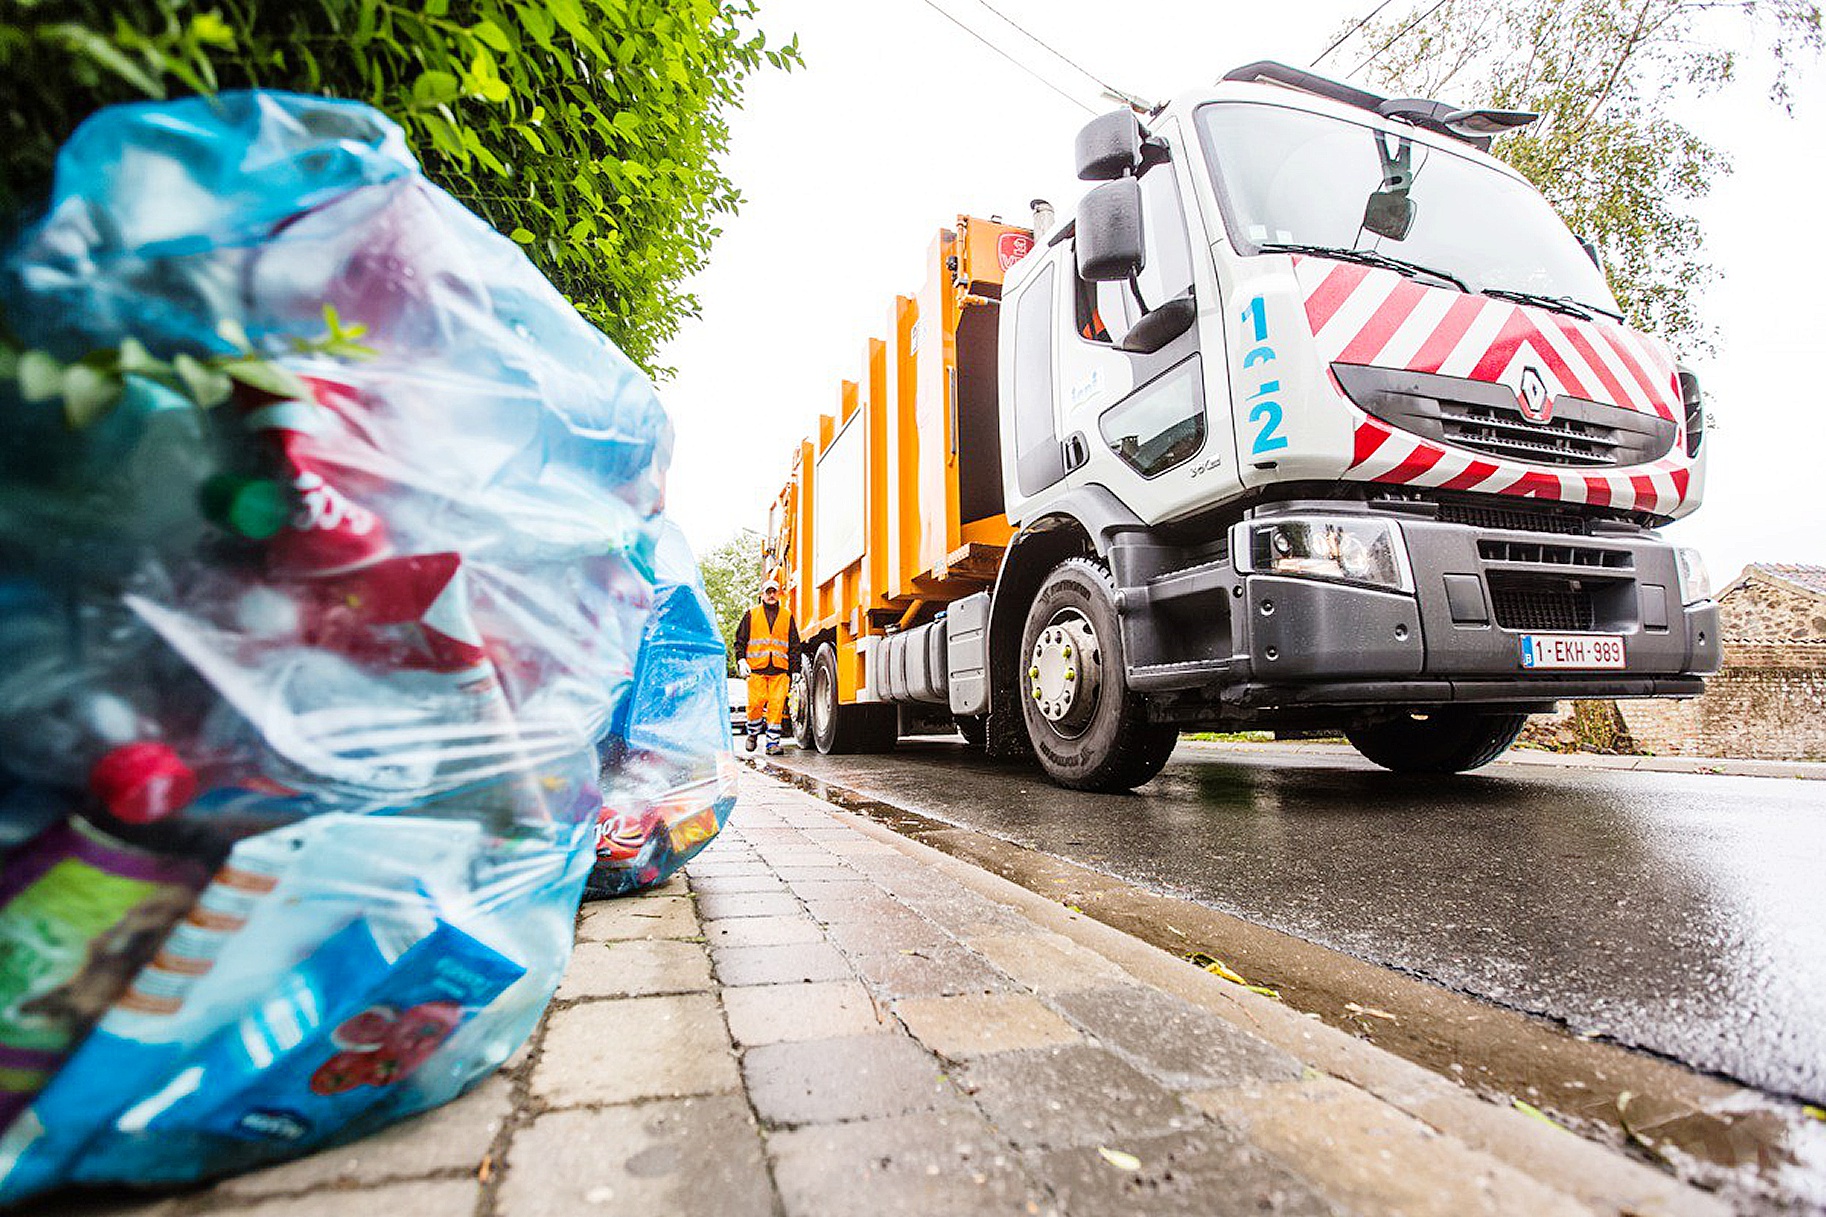 Collecte et gestion des déchets : tri sélectif et poubelles à puce